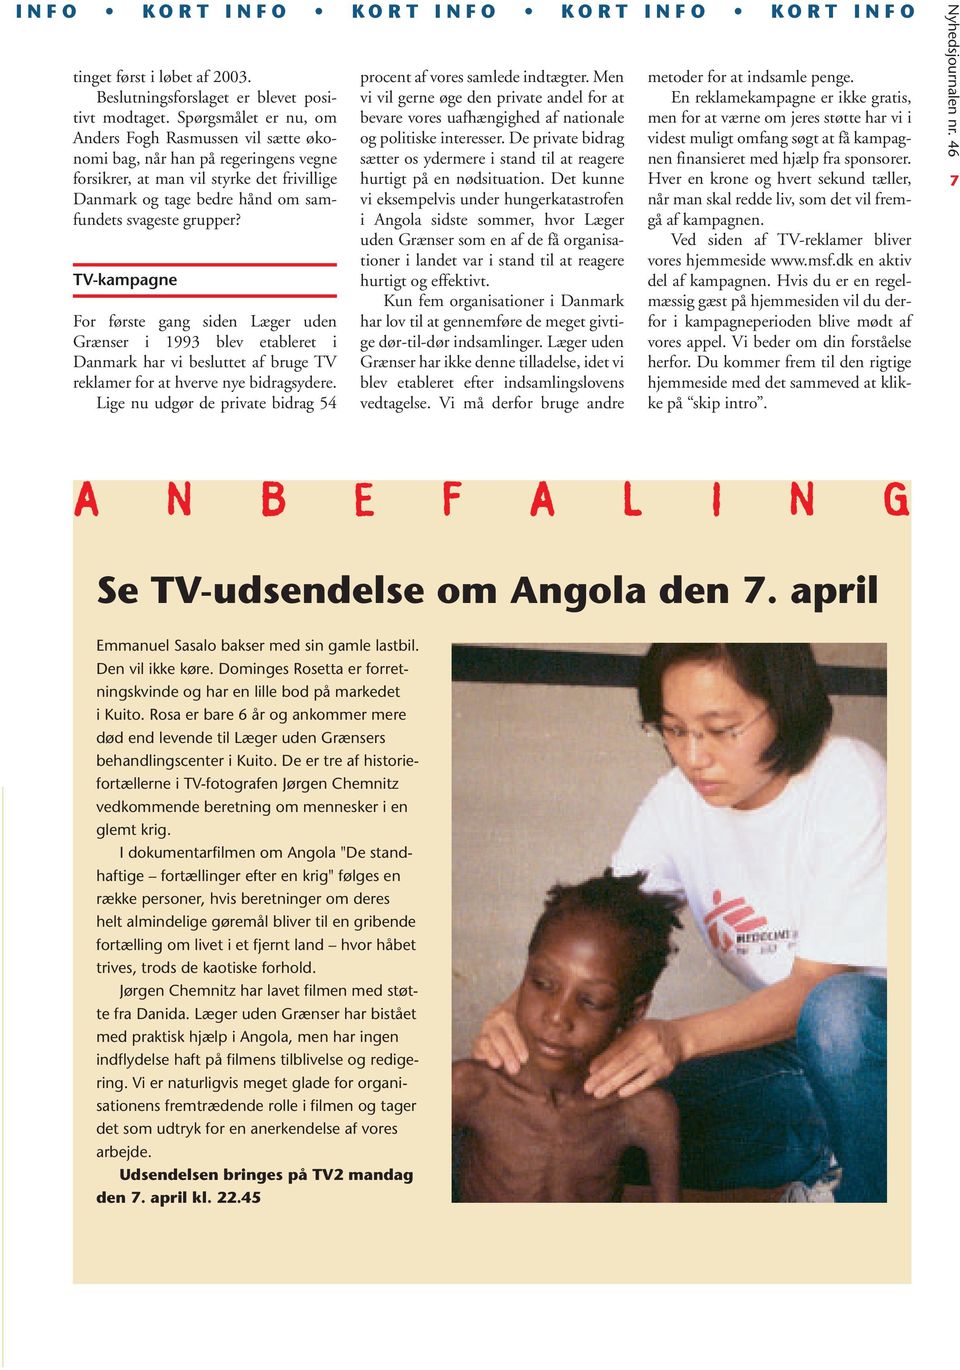 TV-kampagne For første gang siden Læger uden Grænser i 1993 blev etableret i Danmark har vi besluttet af bruge TV reklamer for at hverve nye bidragsydere.